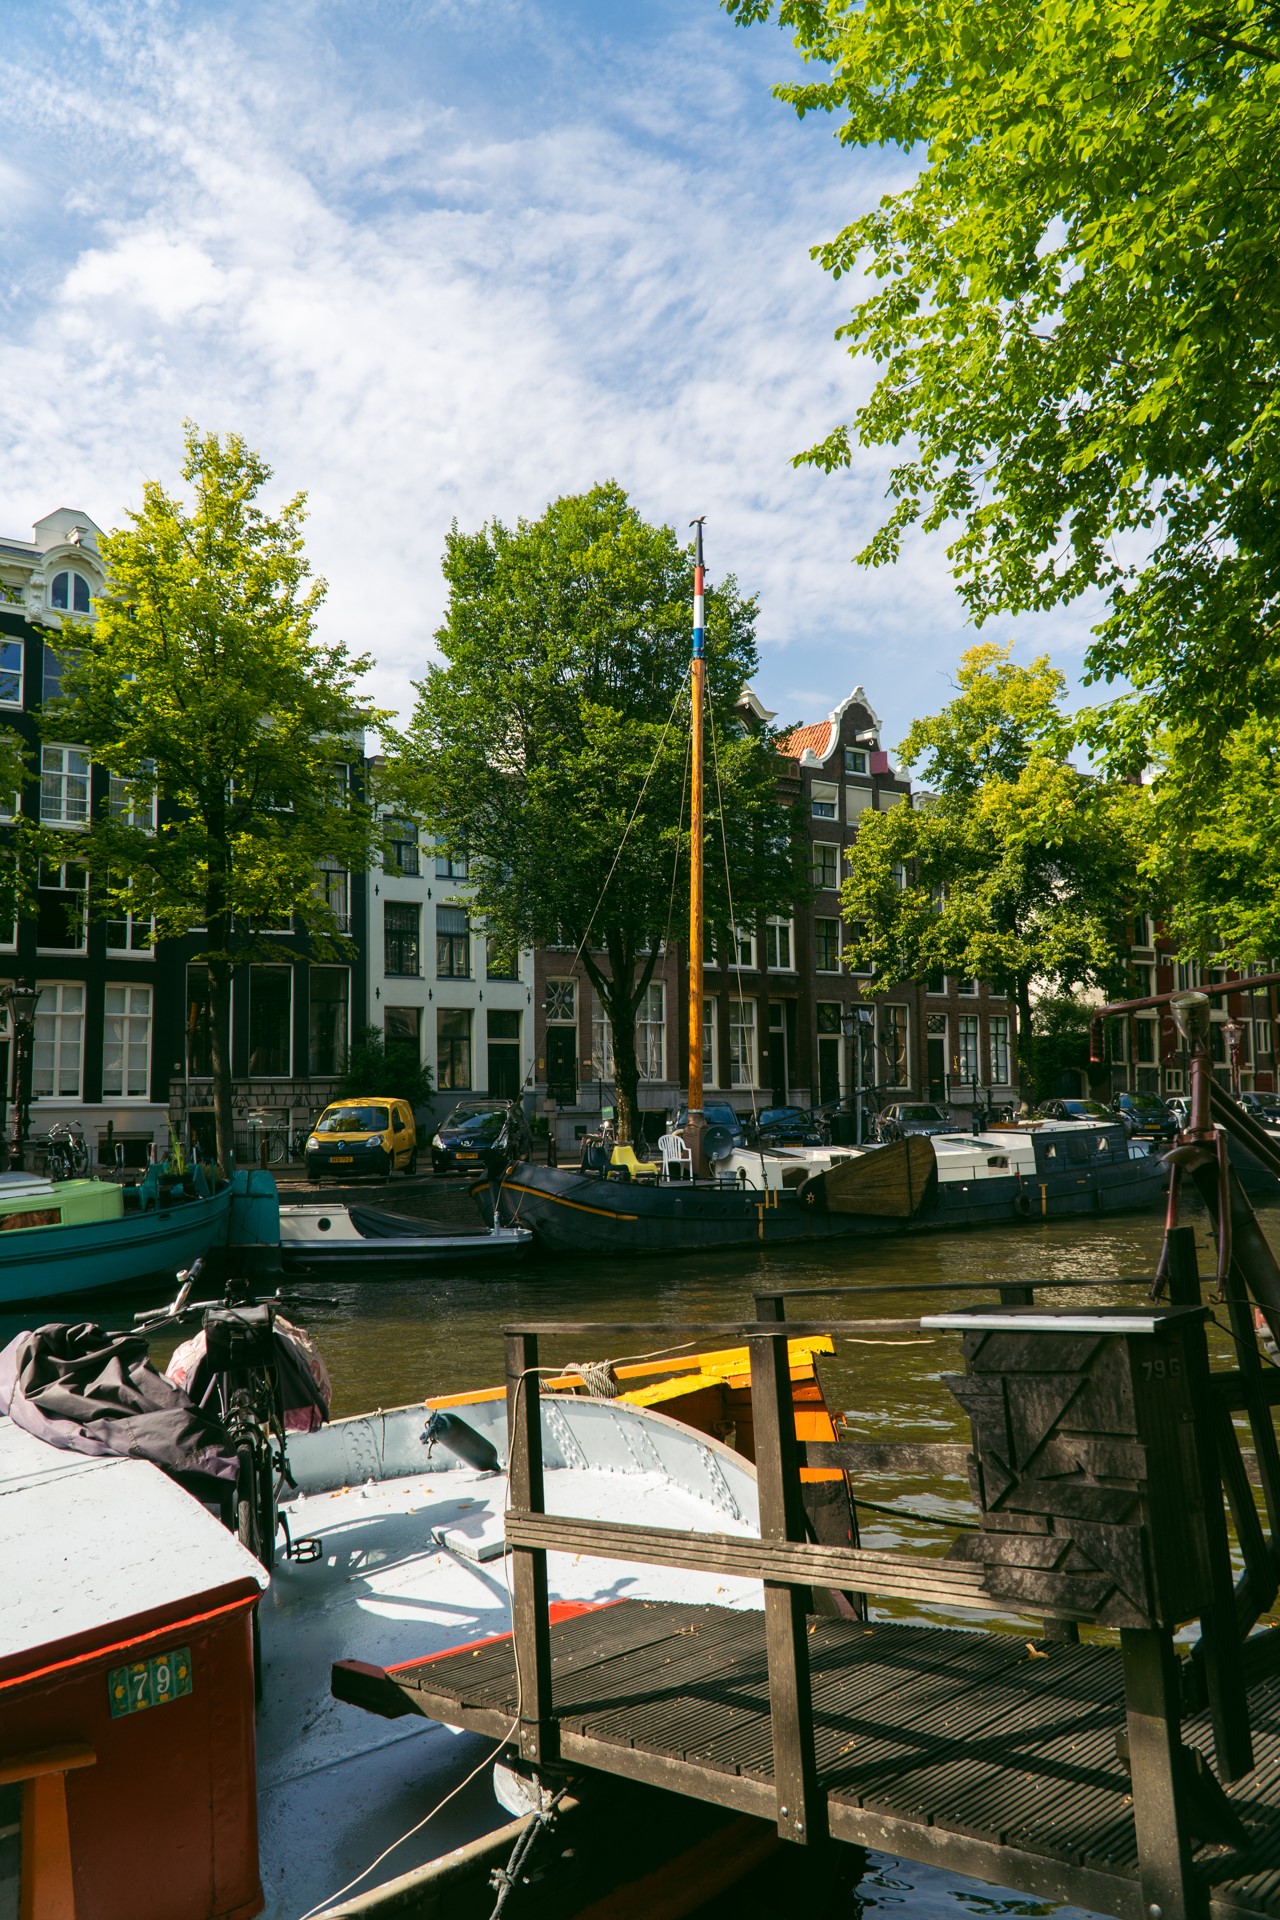 Kanały w dzielnicy Jordaan w Amsterdamie | Co zobaczyć w Amsterdamie?